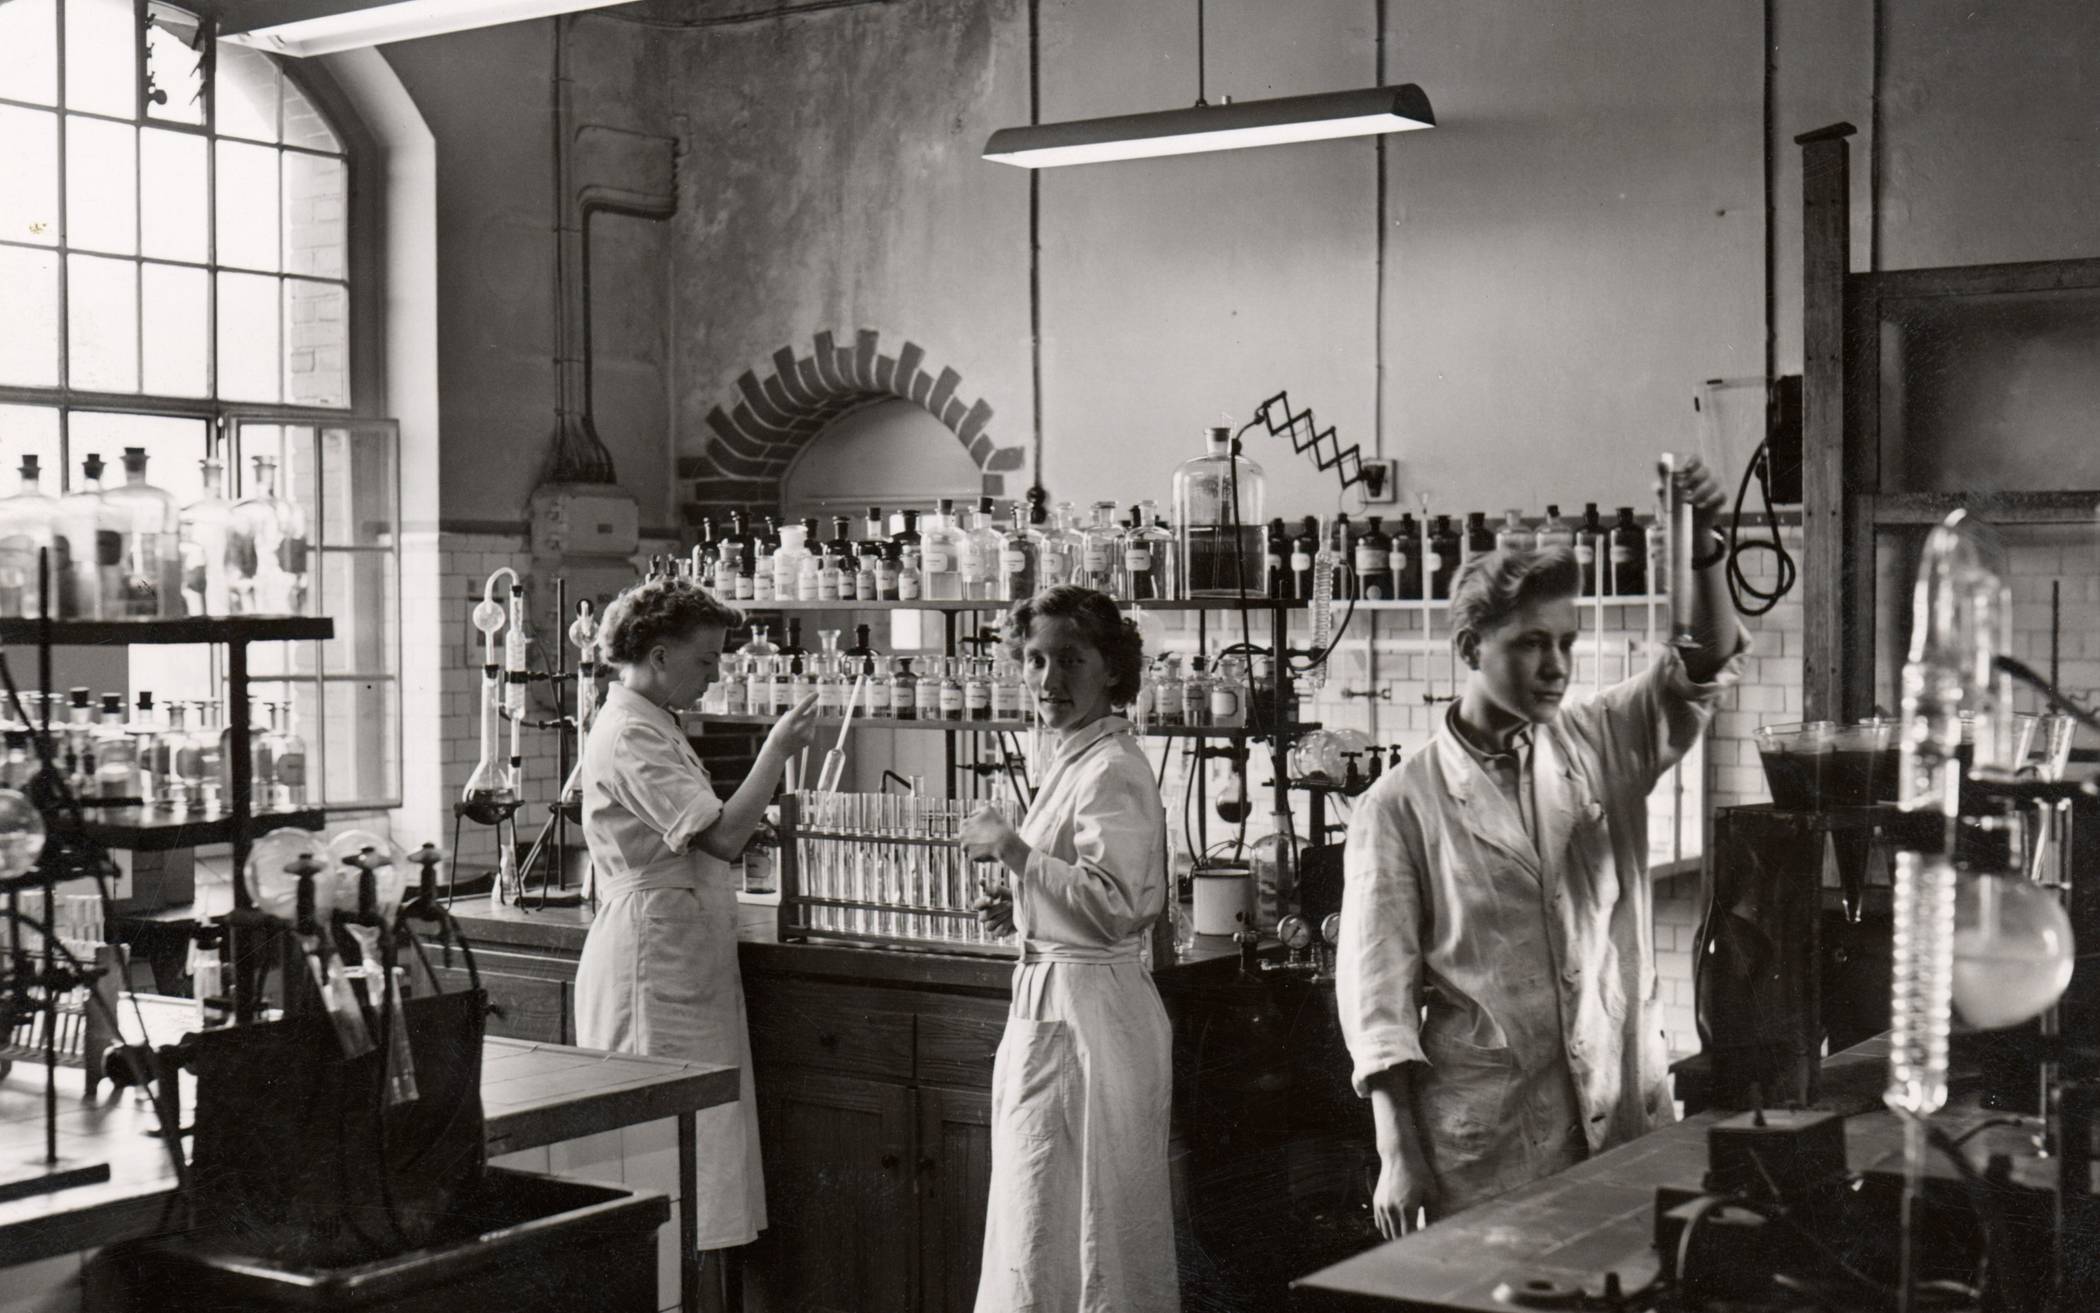 Blick in ein Labor des Wupperverbandes im Jahr 1953.